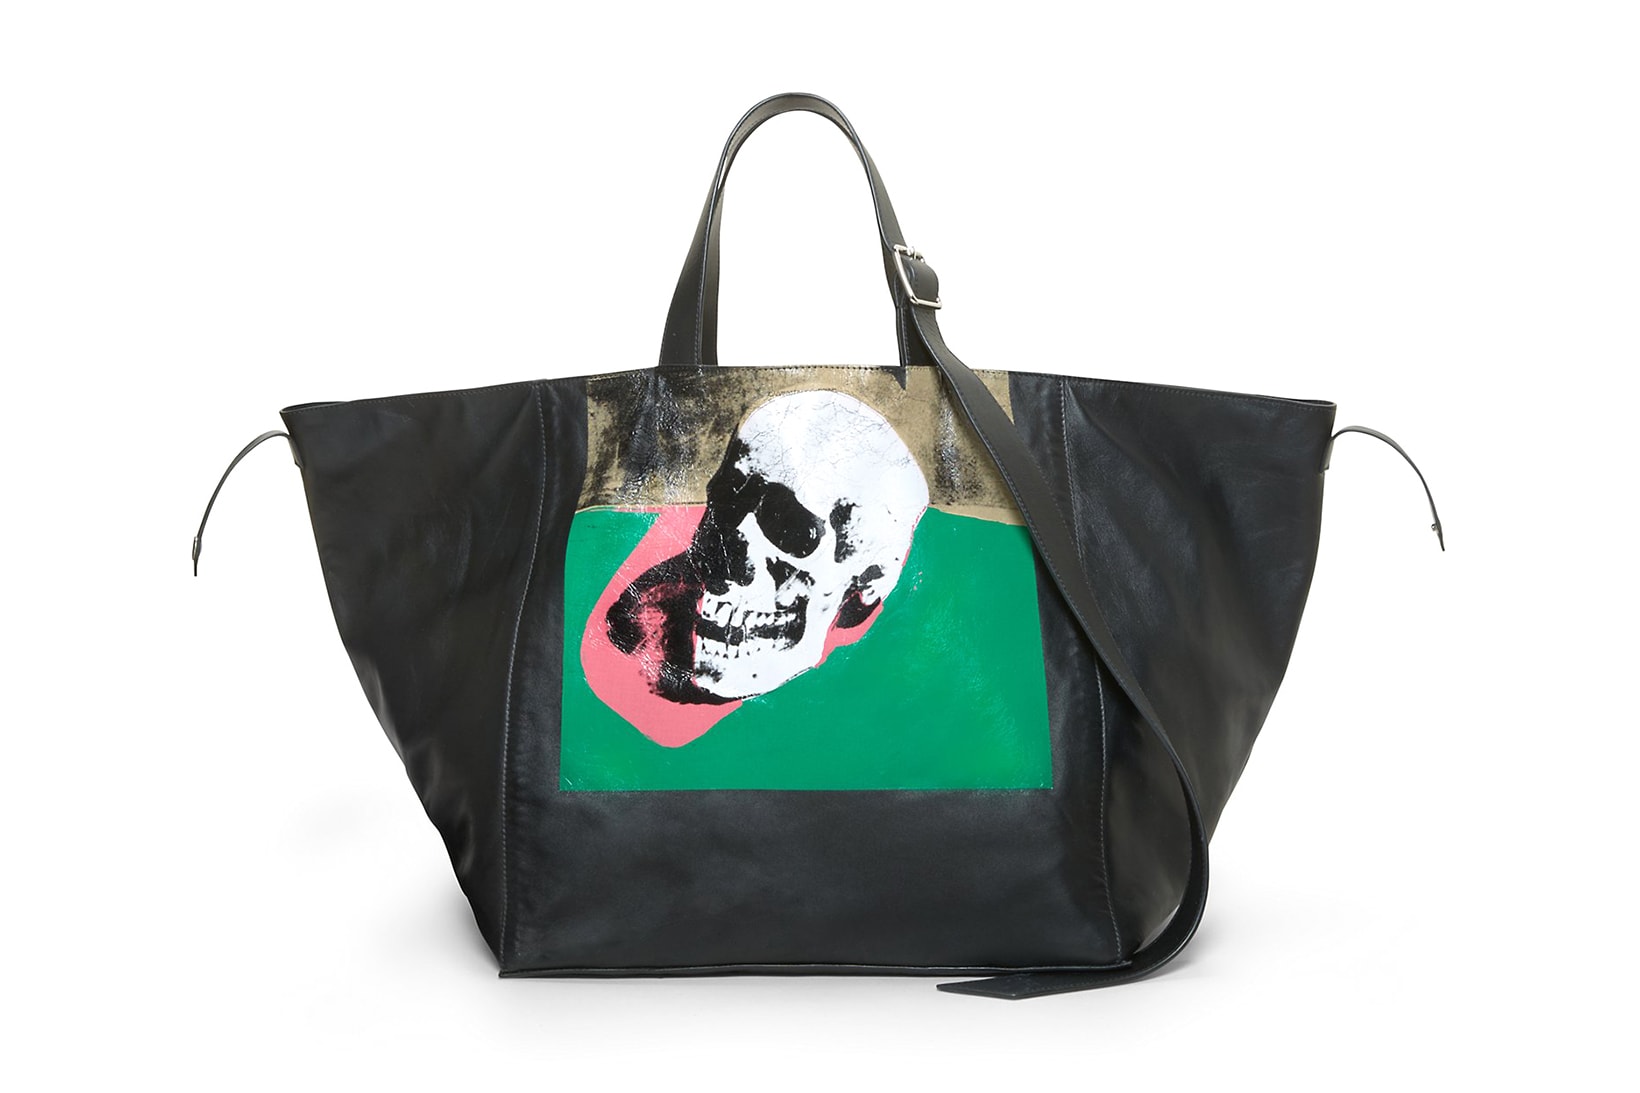 Handbags, Calvin Klein